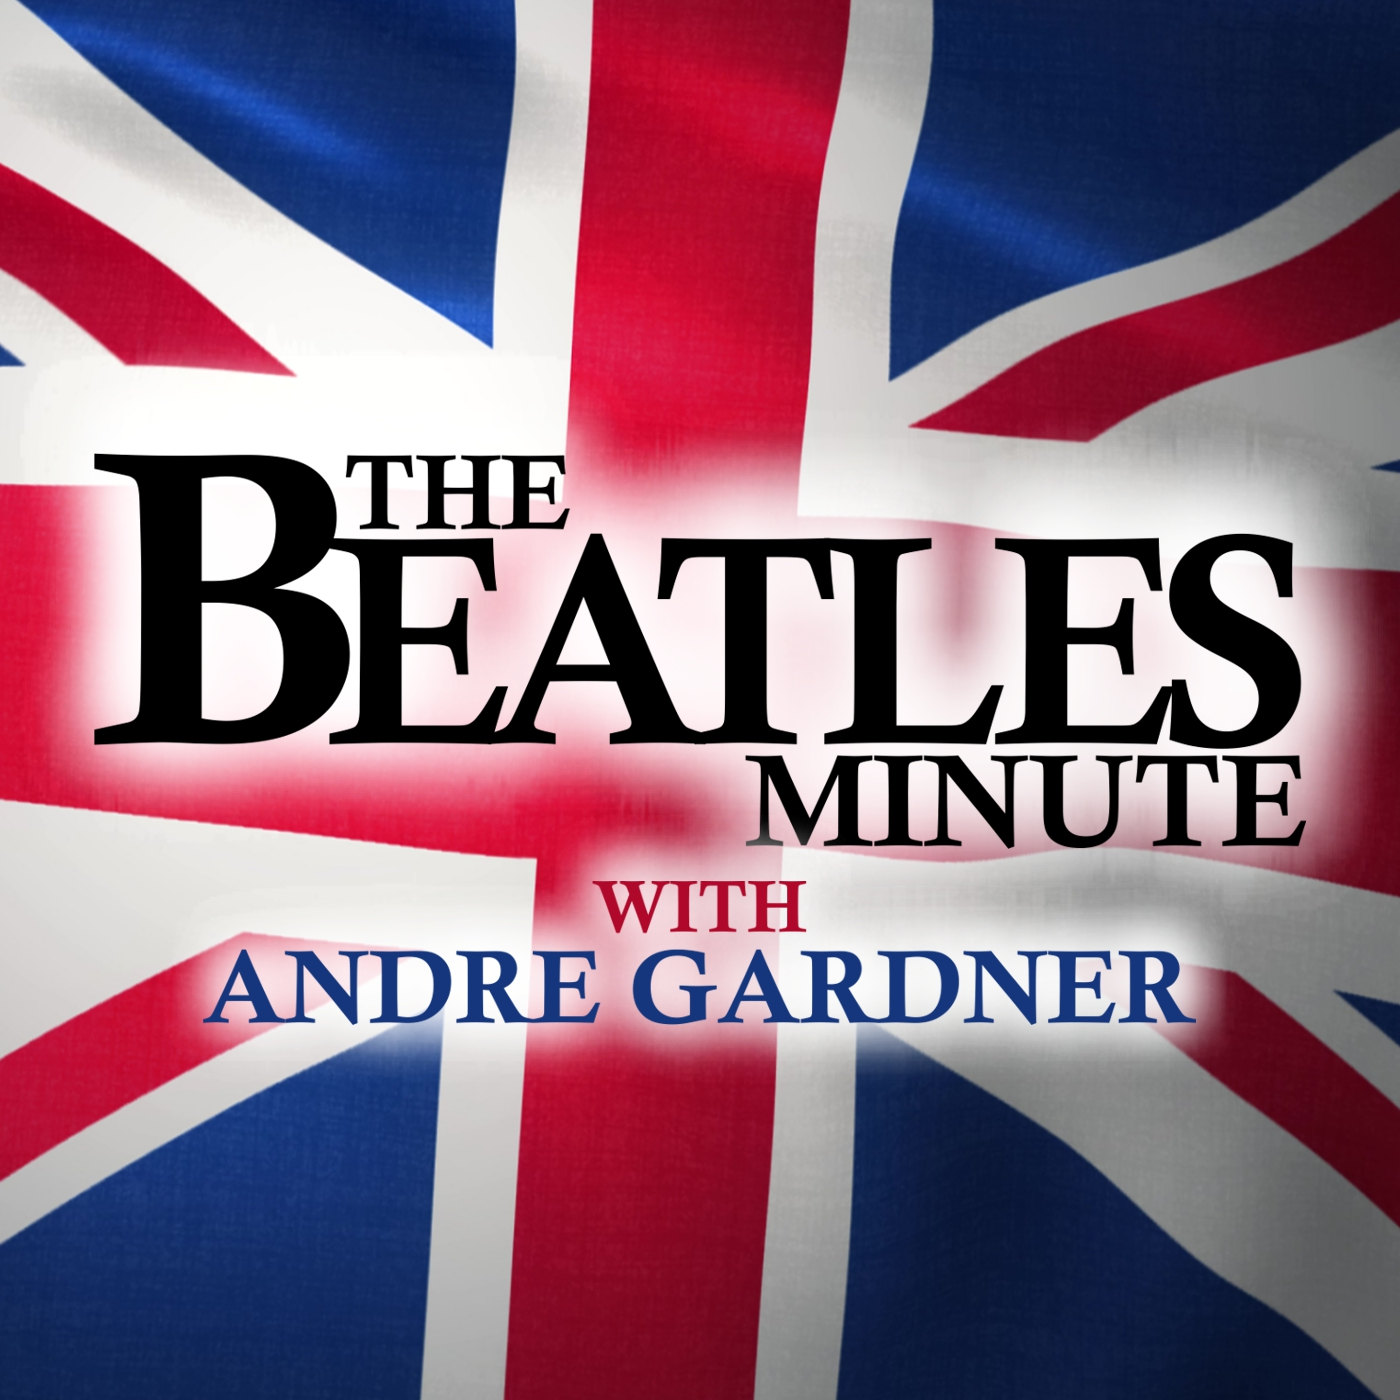 Beatles Minute - week of January 27, 2020